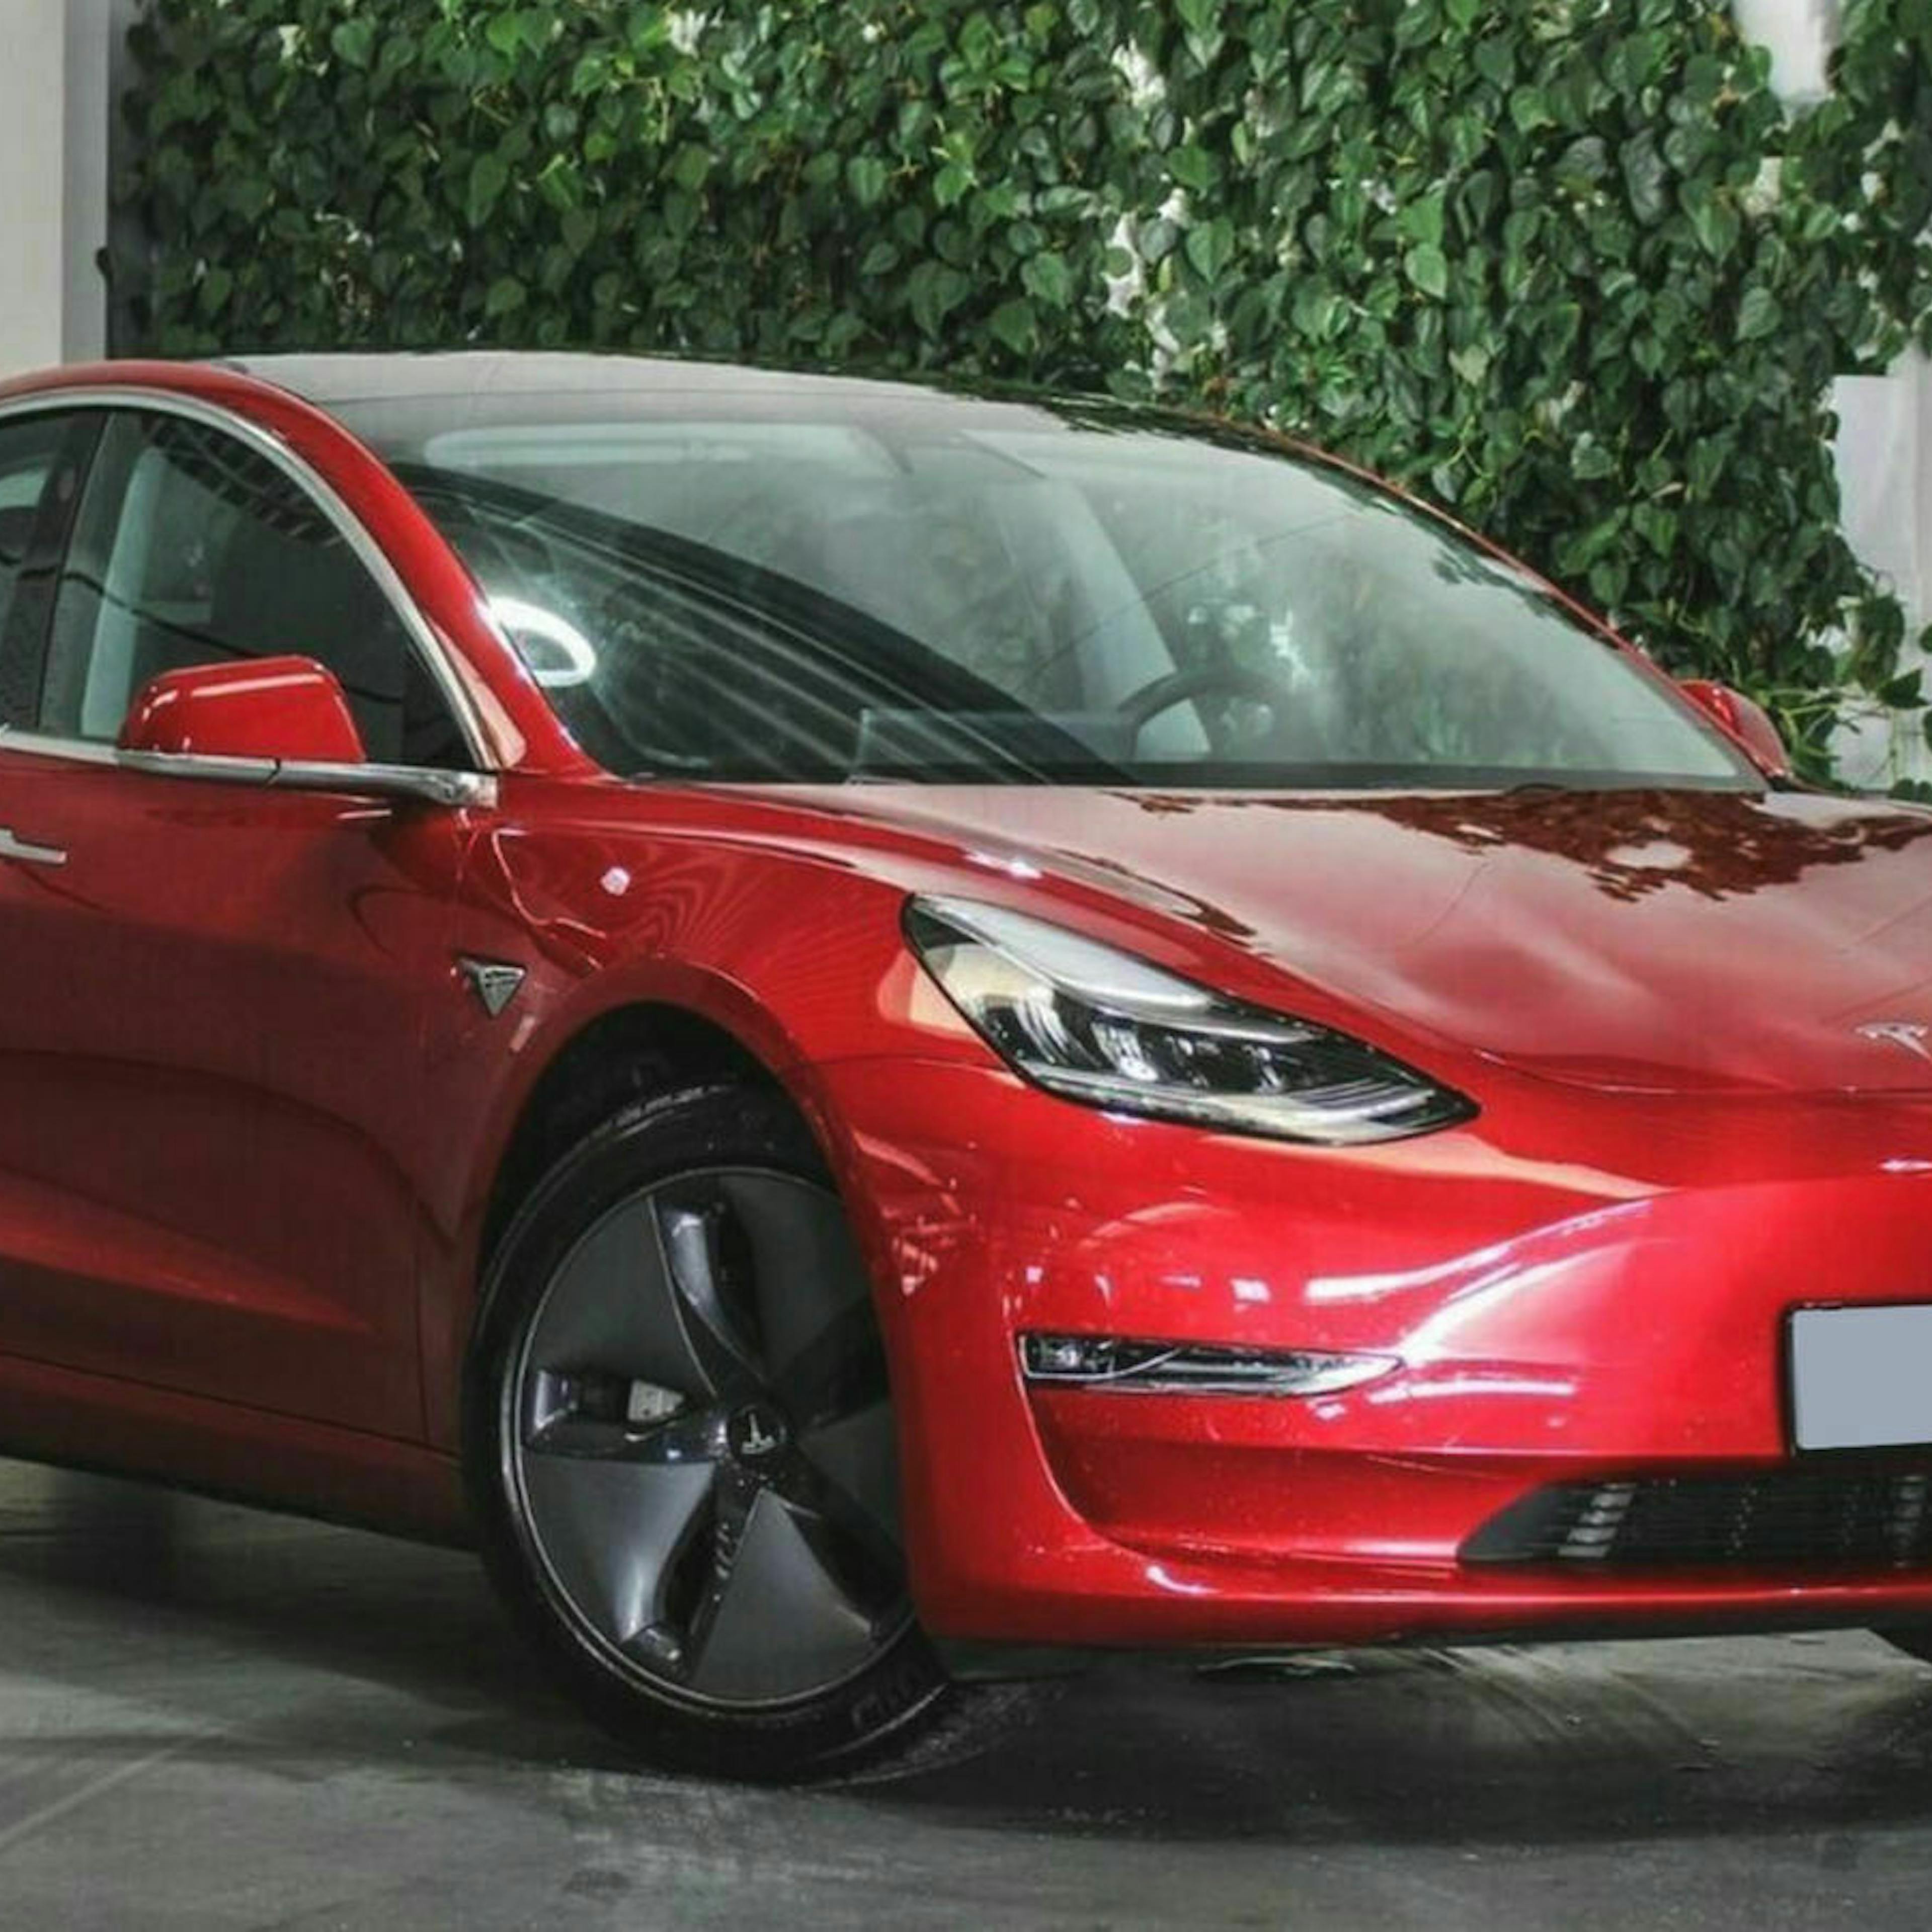 Ein rotes Tesla Model 3 mit Heckantrieb steht im Showroom eines Autohauses